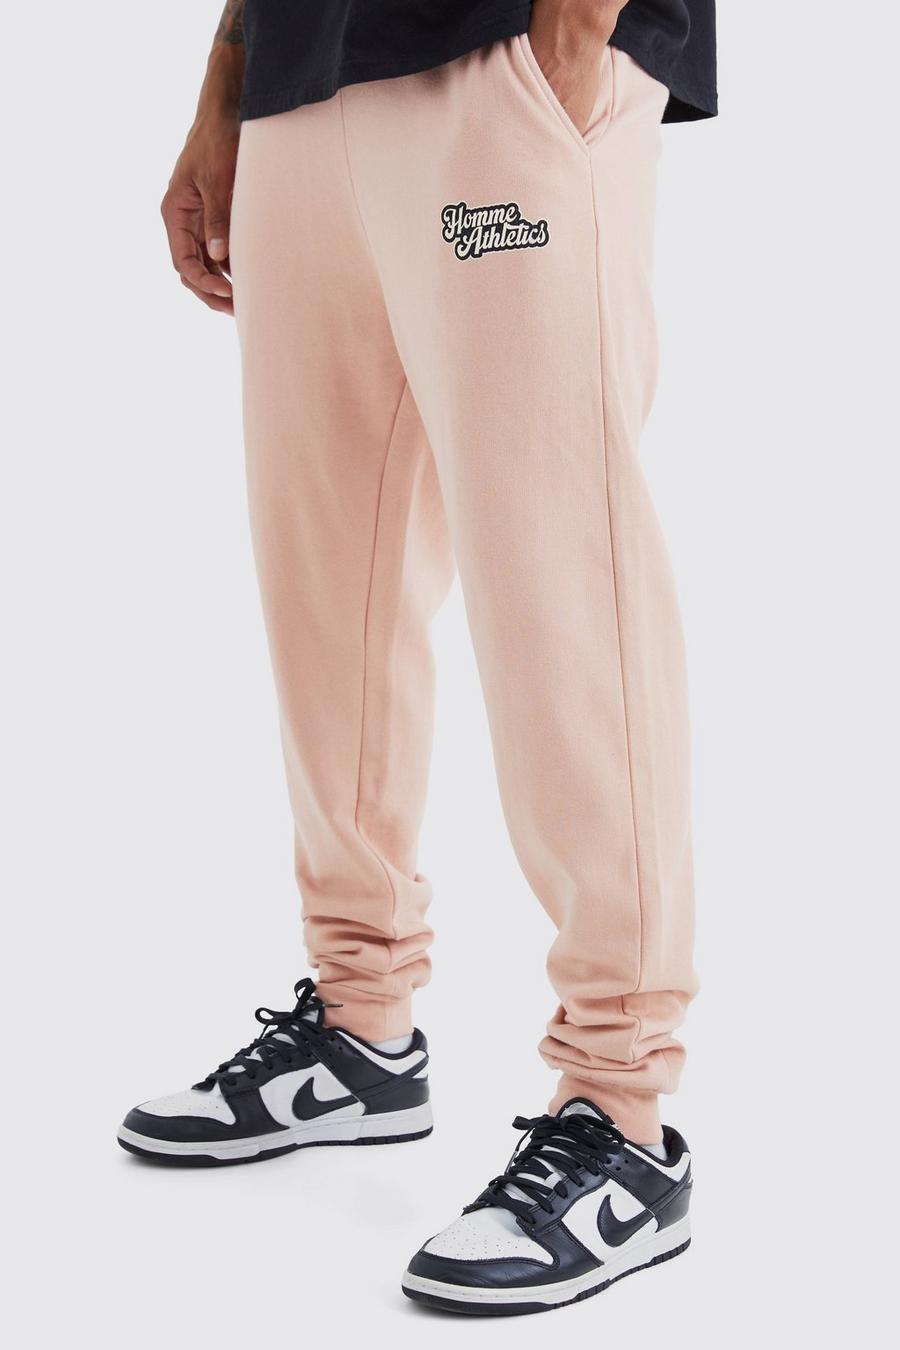 Pantalón deportivo oversize con estampado gráfico universitario, Dusty pink